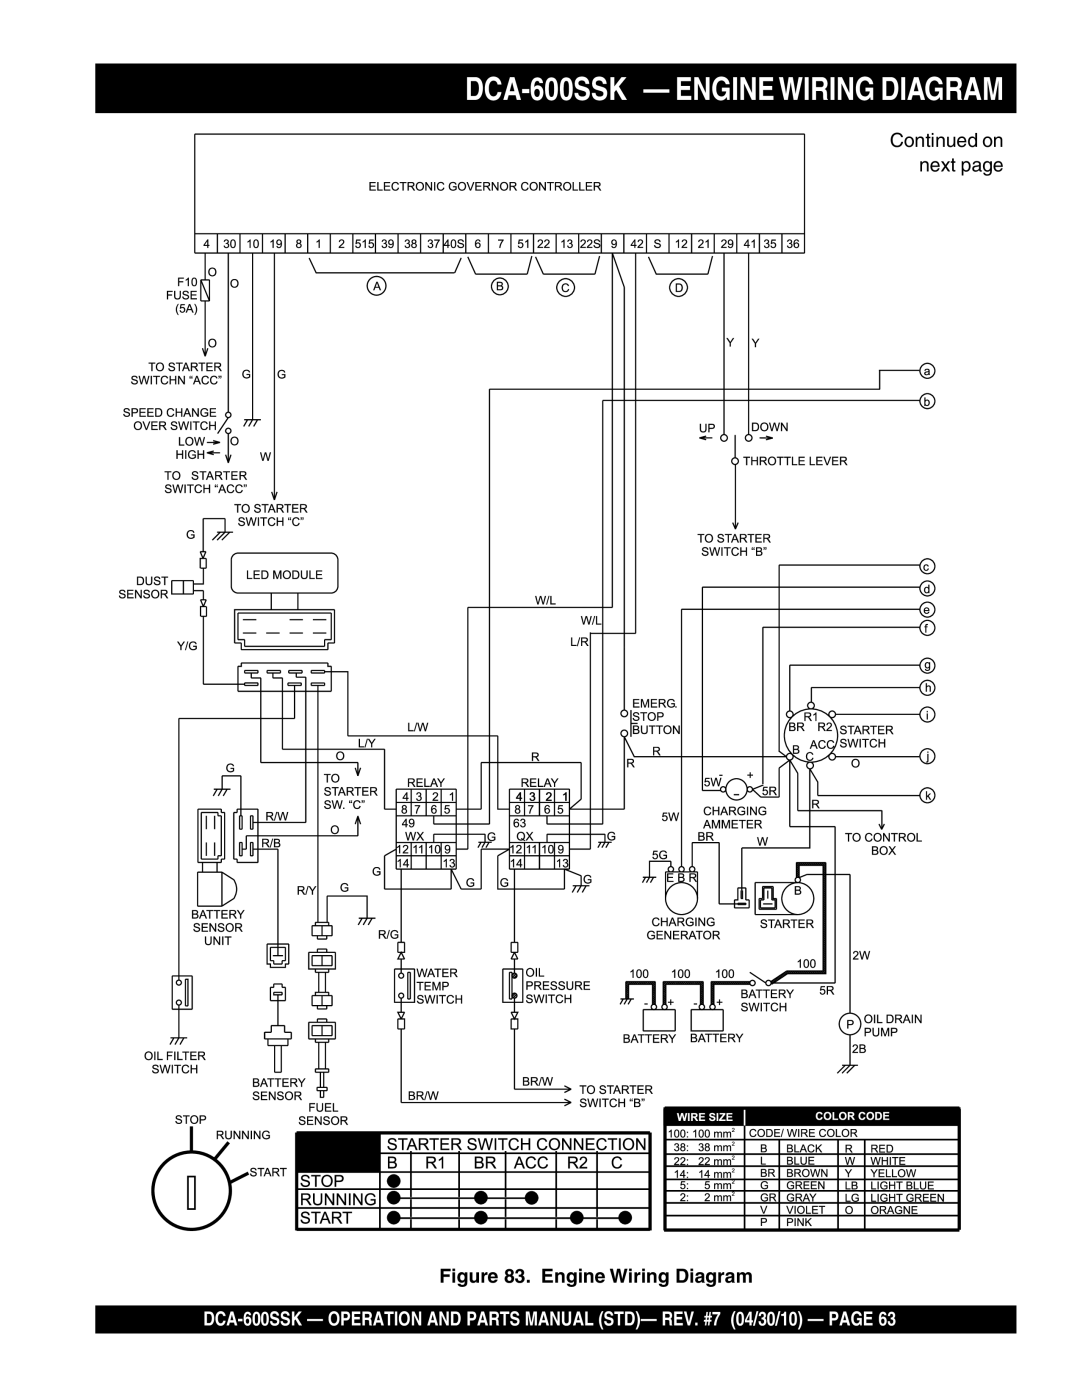 Multiquip operation manual DCA-600SSK - ENGINE WIRING DIAGRAM, Engine Wiring Diagram 